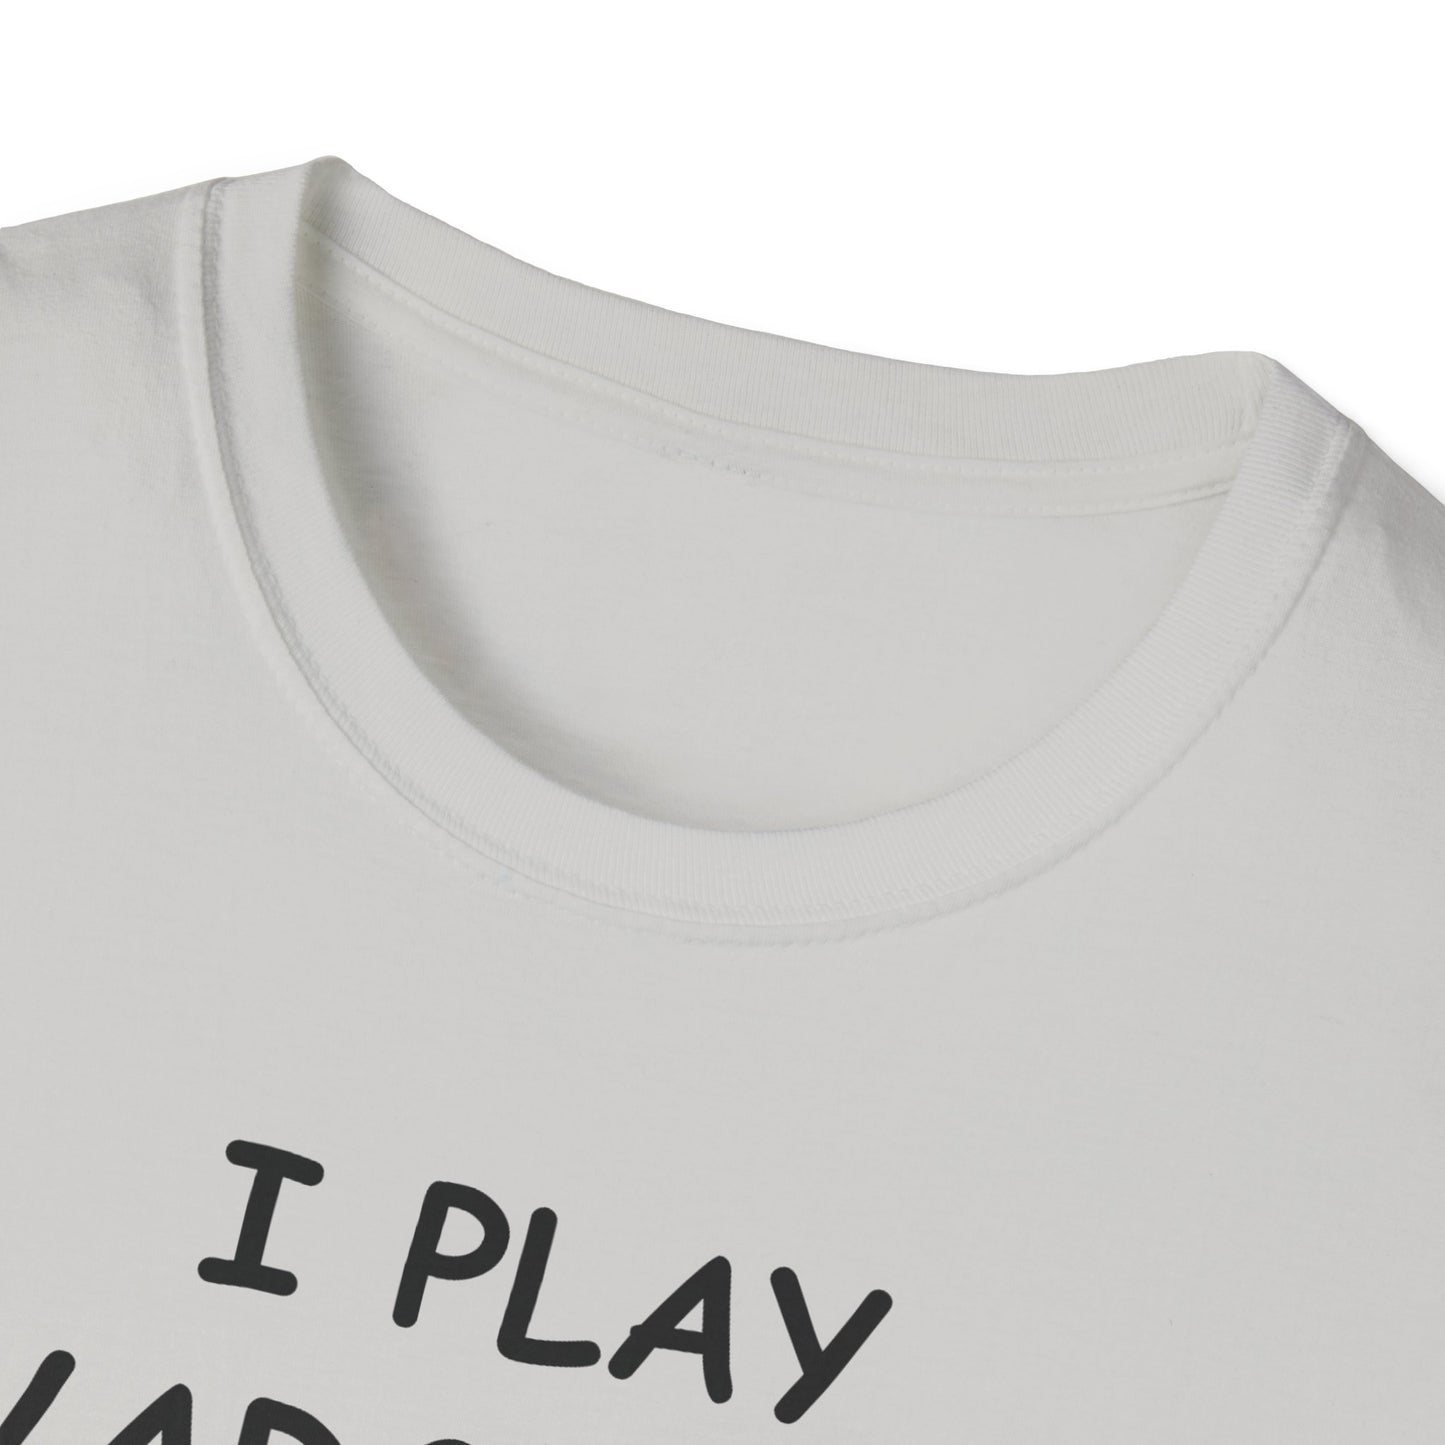 I Play Wargames - Black - Unisex Softstyle T-Shirt